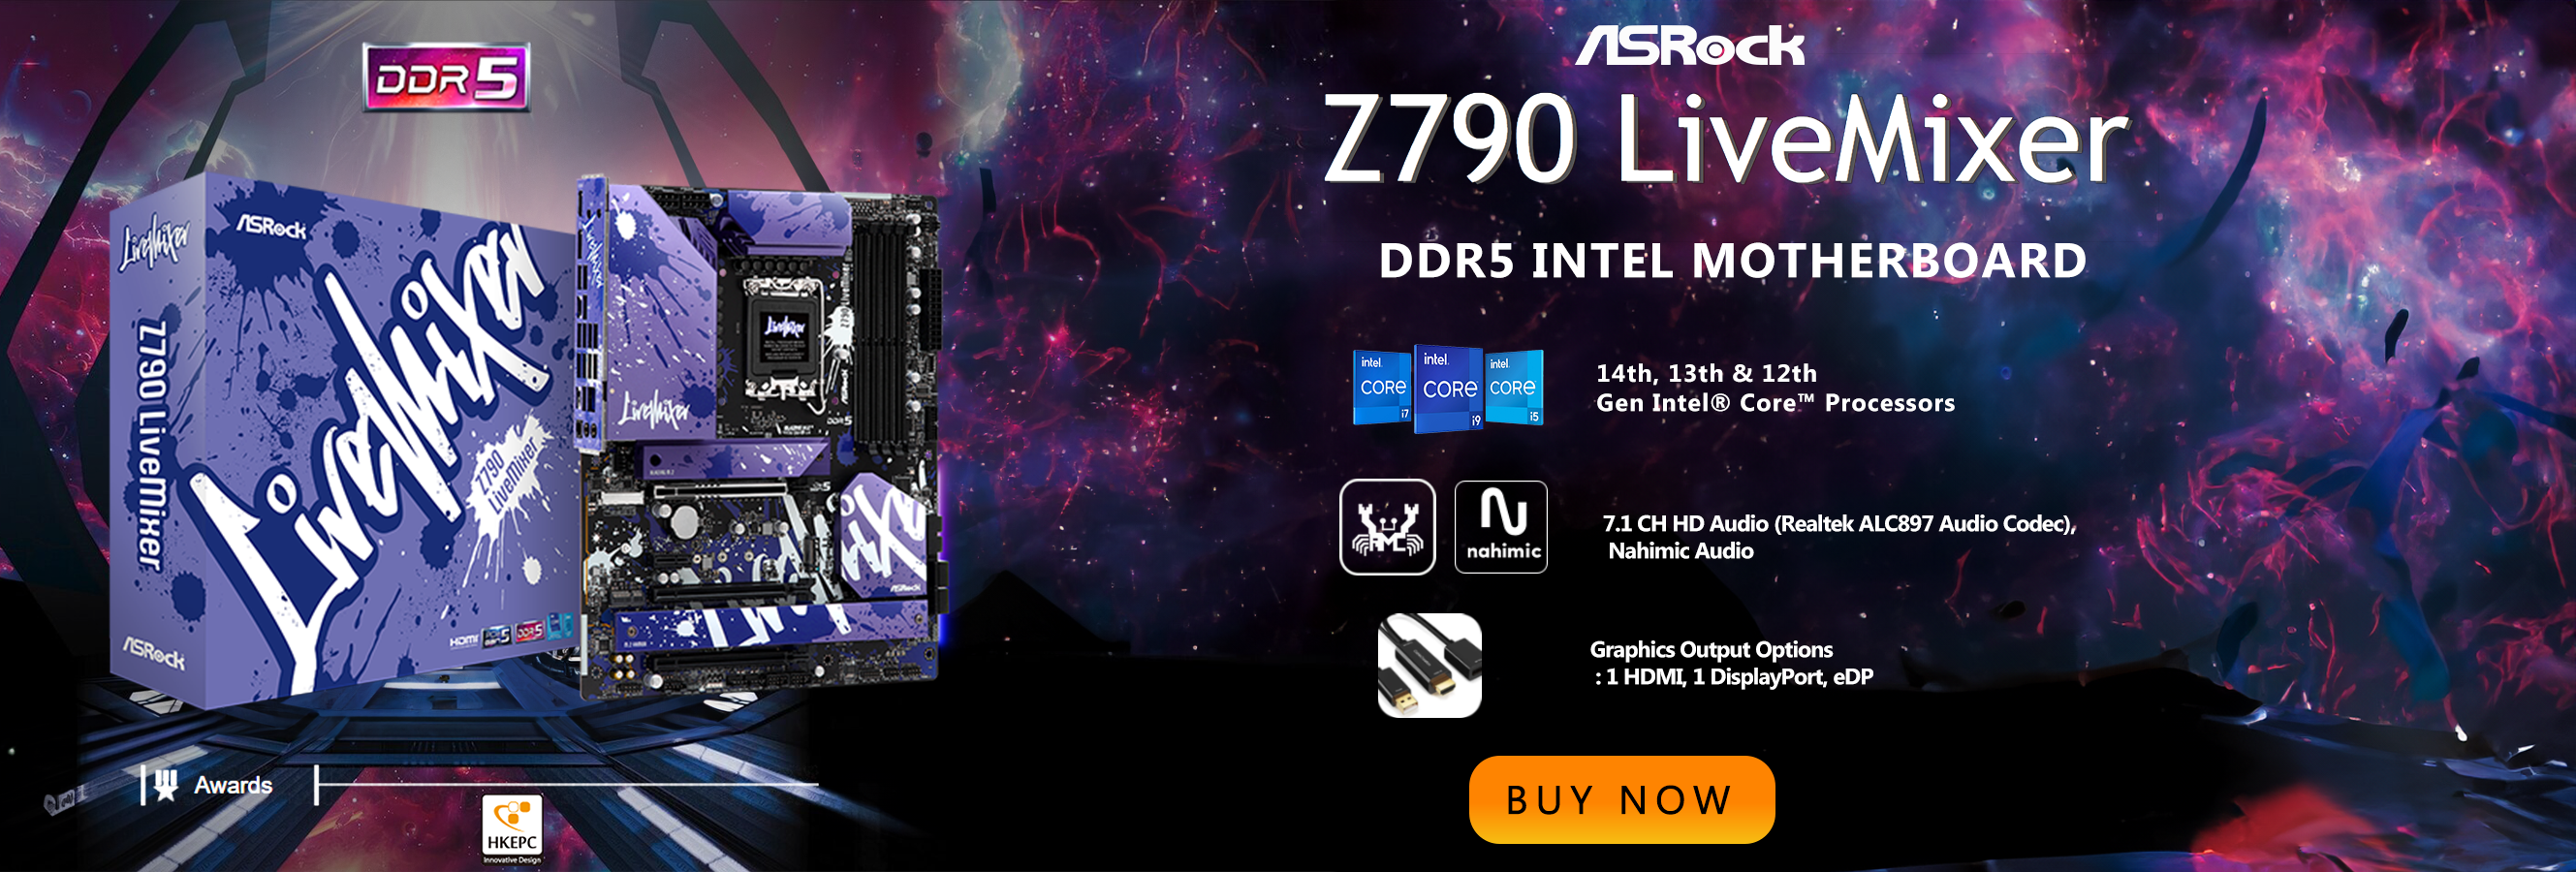 Asrock Z790 LiveMixer DDR5 Intel Motherboard